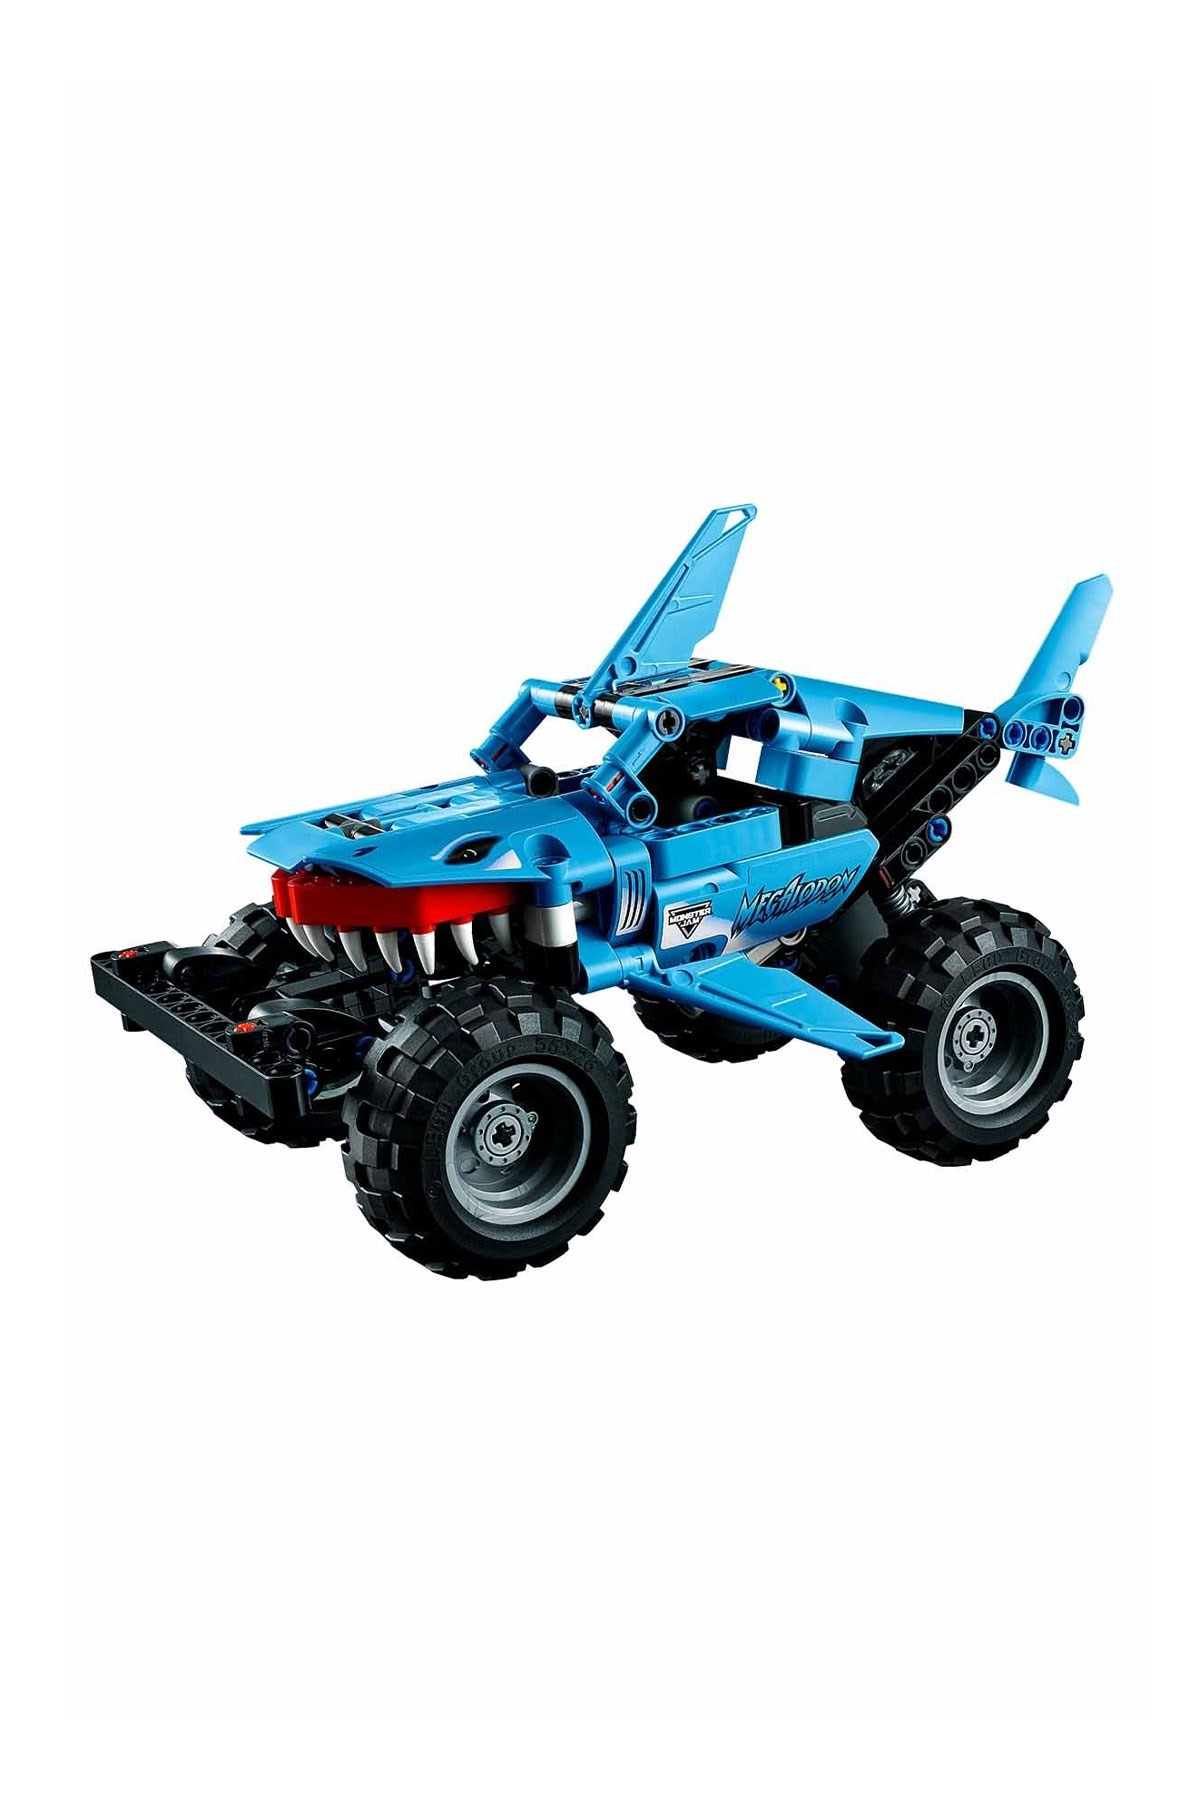 Lego Technic Monster Jam Megalodon